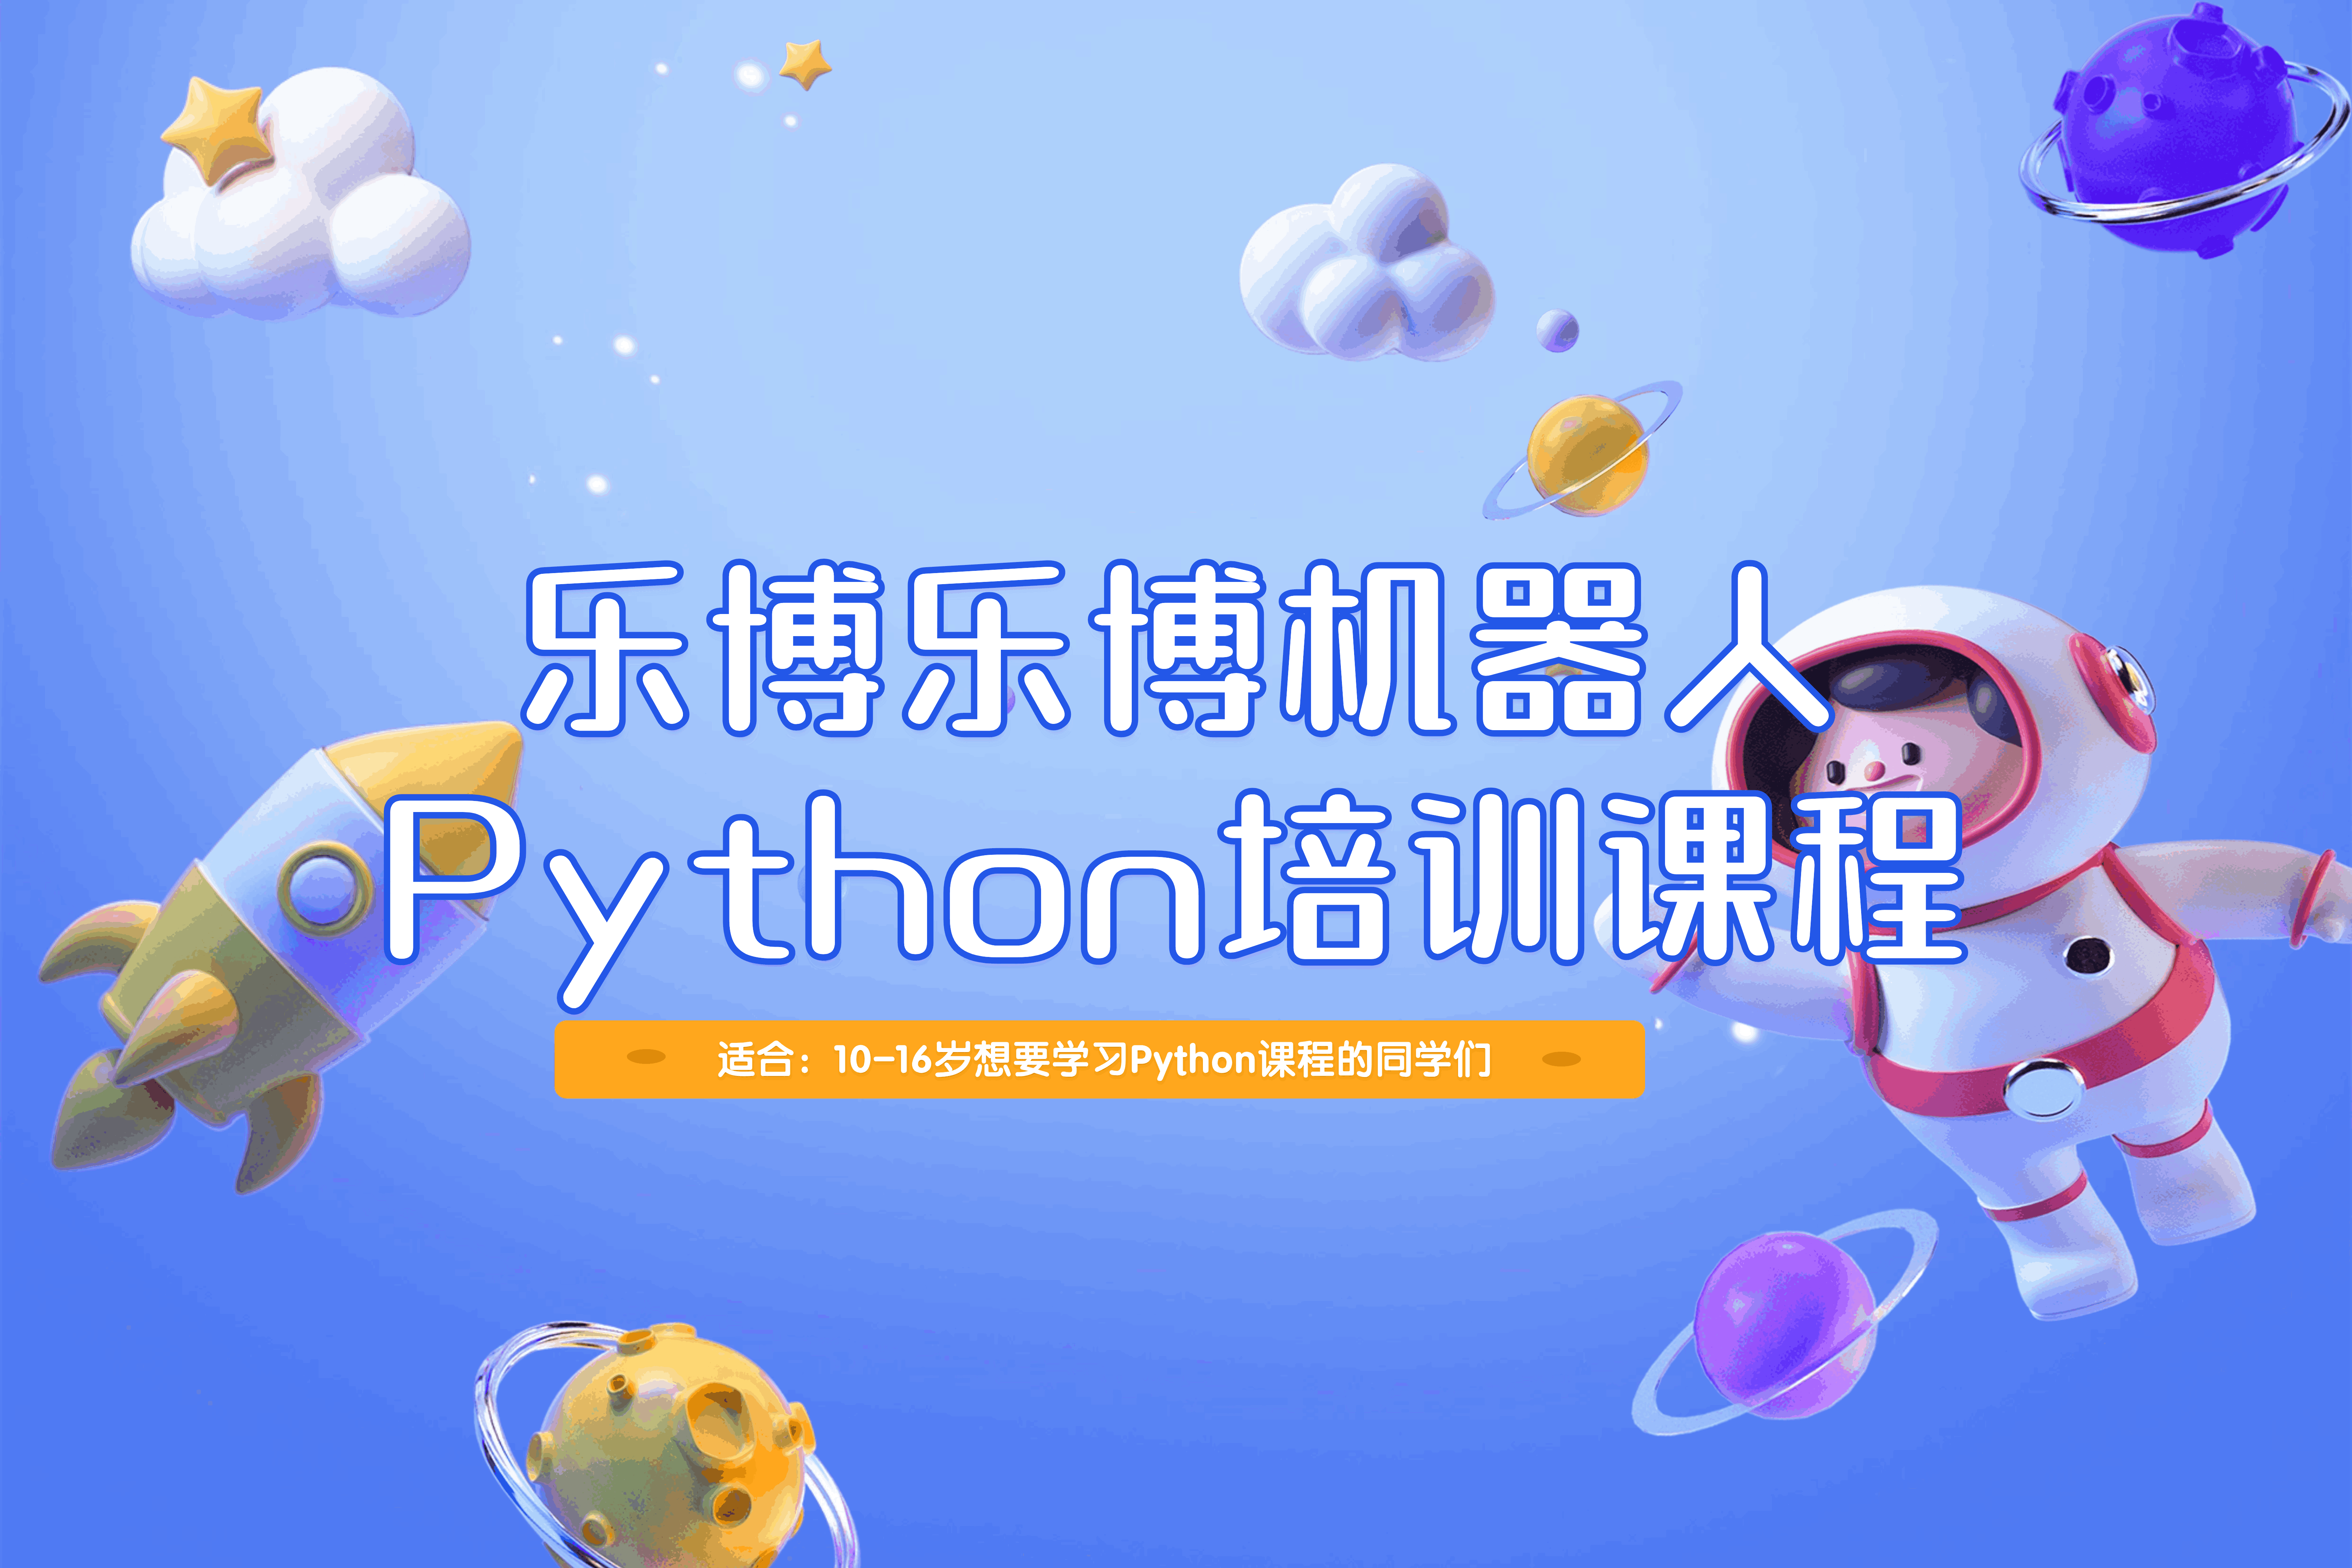 深圳乐博乐博机器人深圳乐博乐博Python培训课程图片